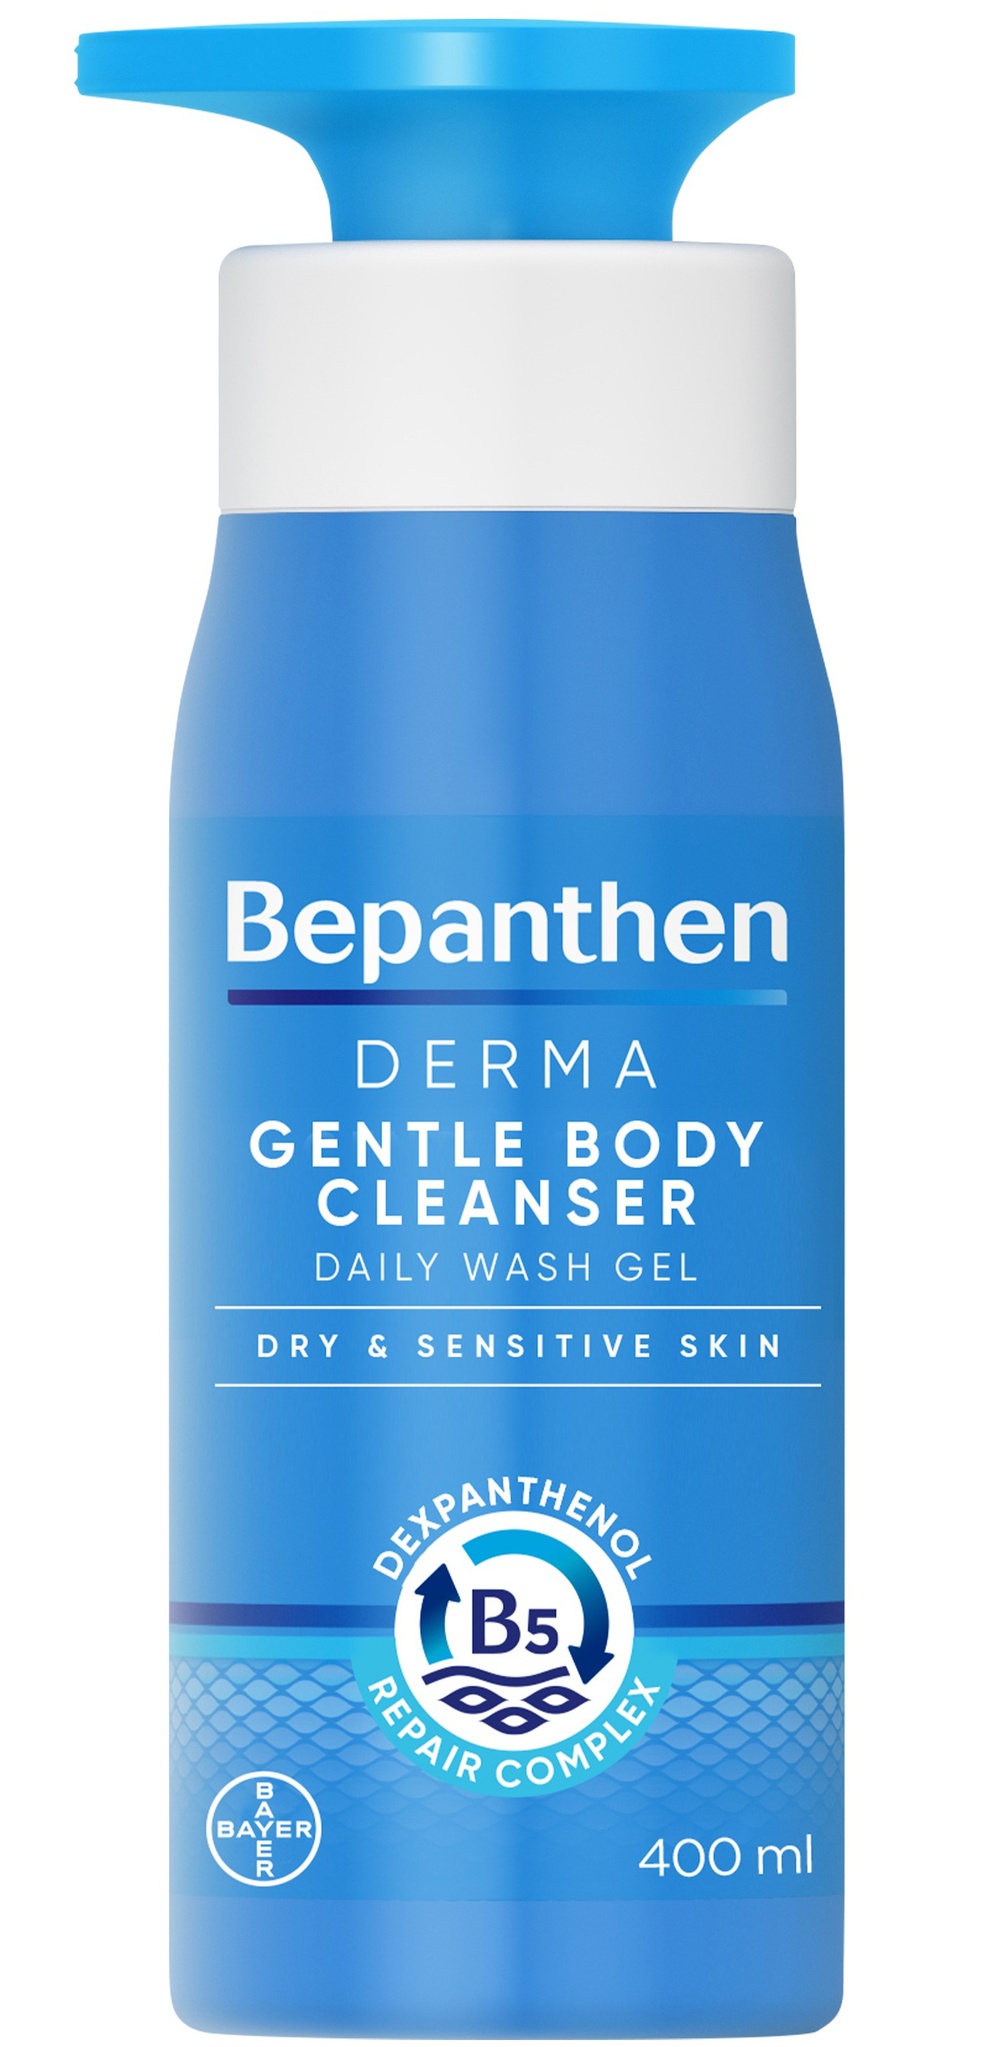 Bepanthen Derma Gentle Body Cleanser